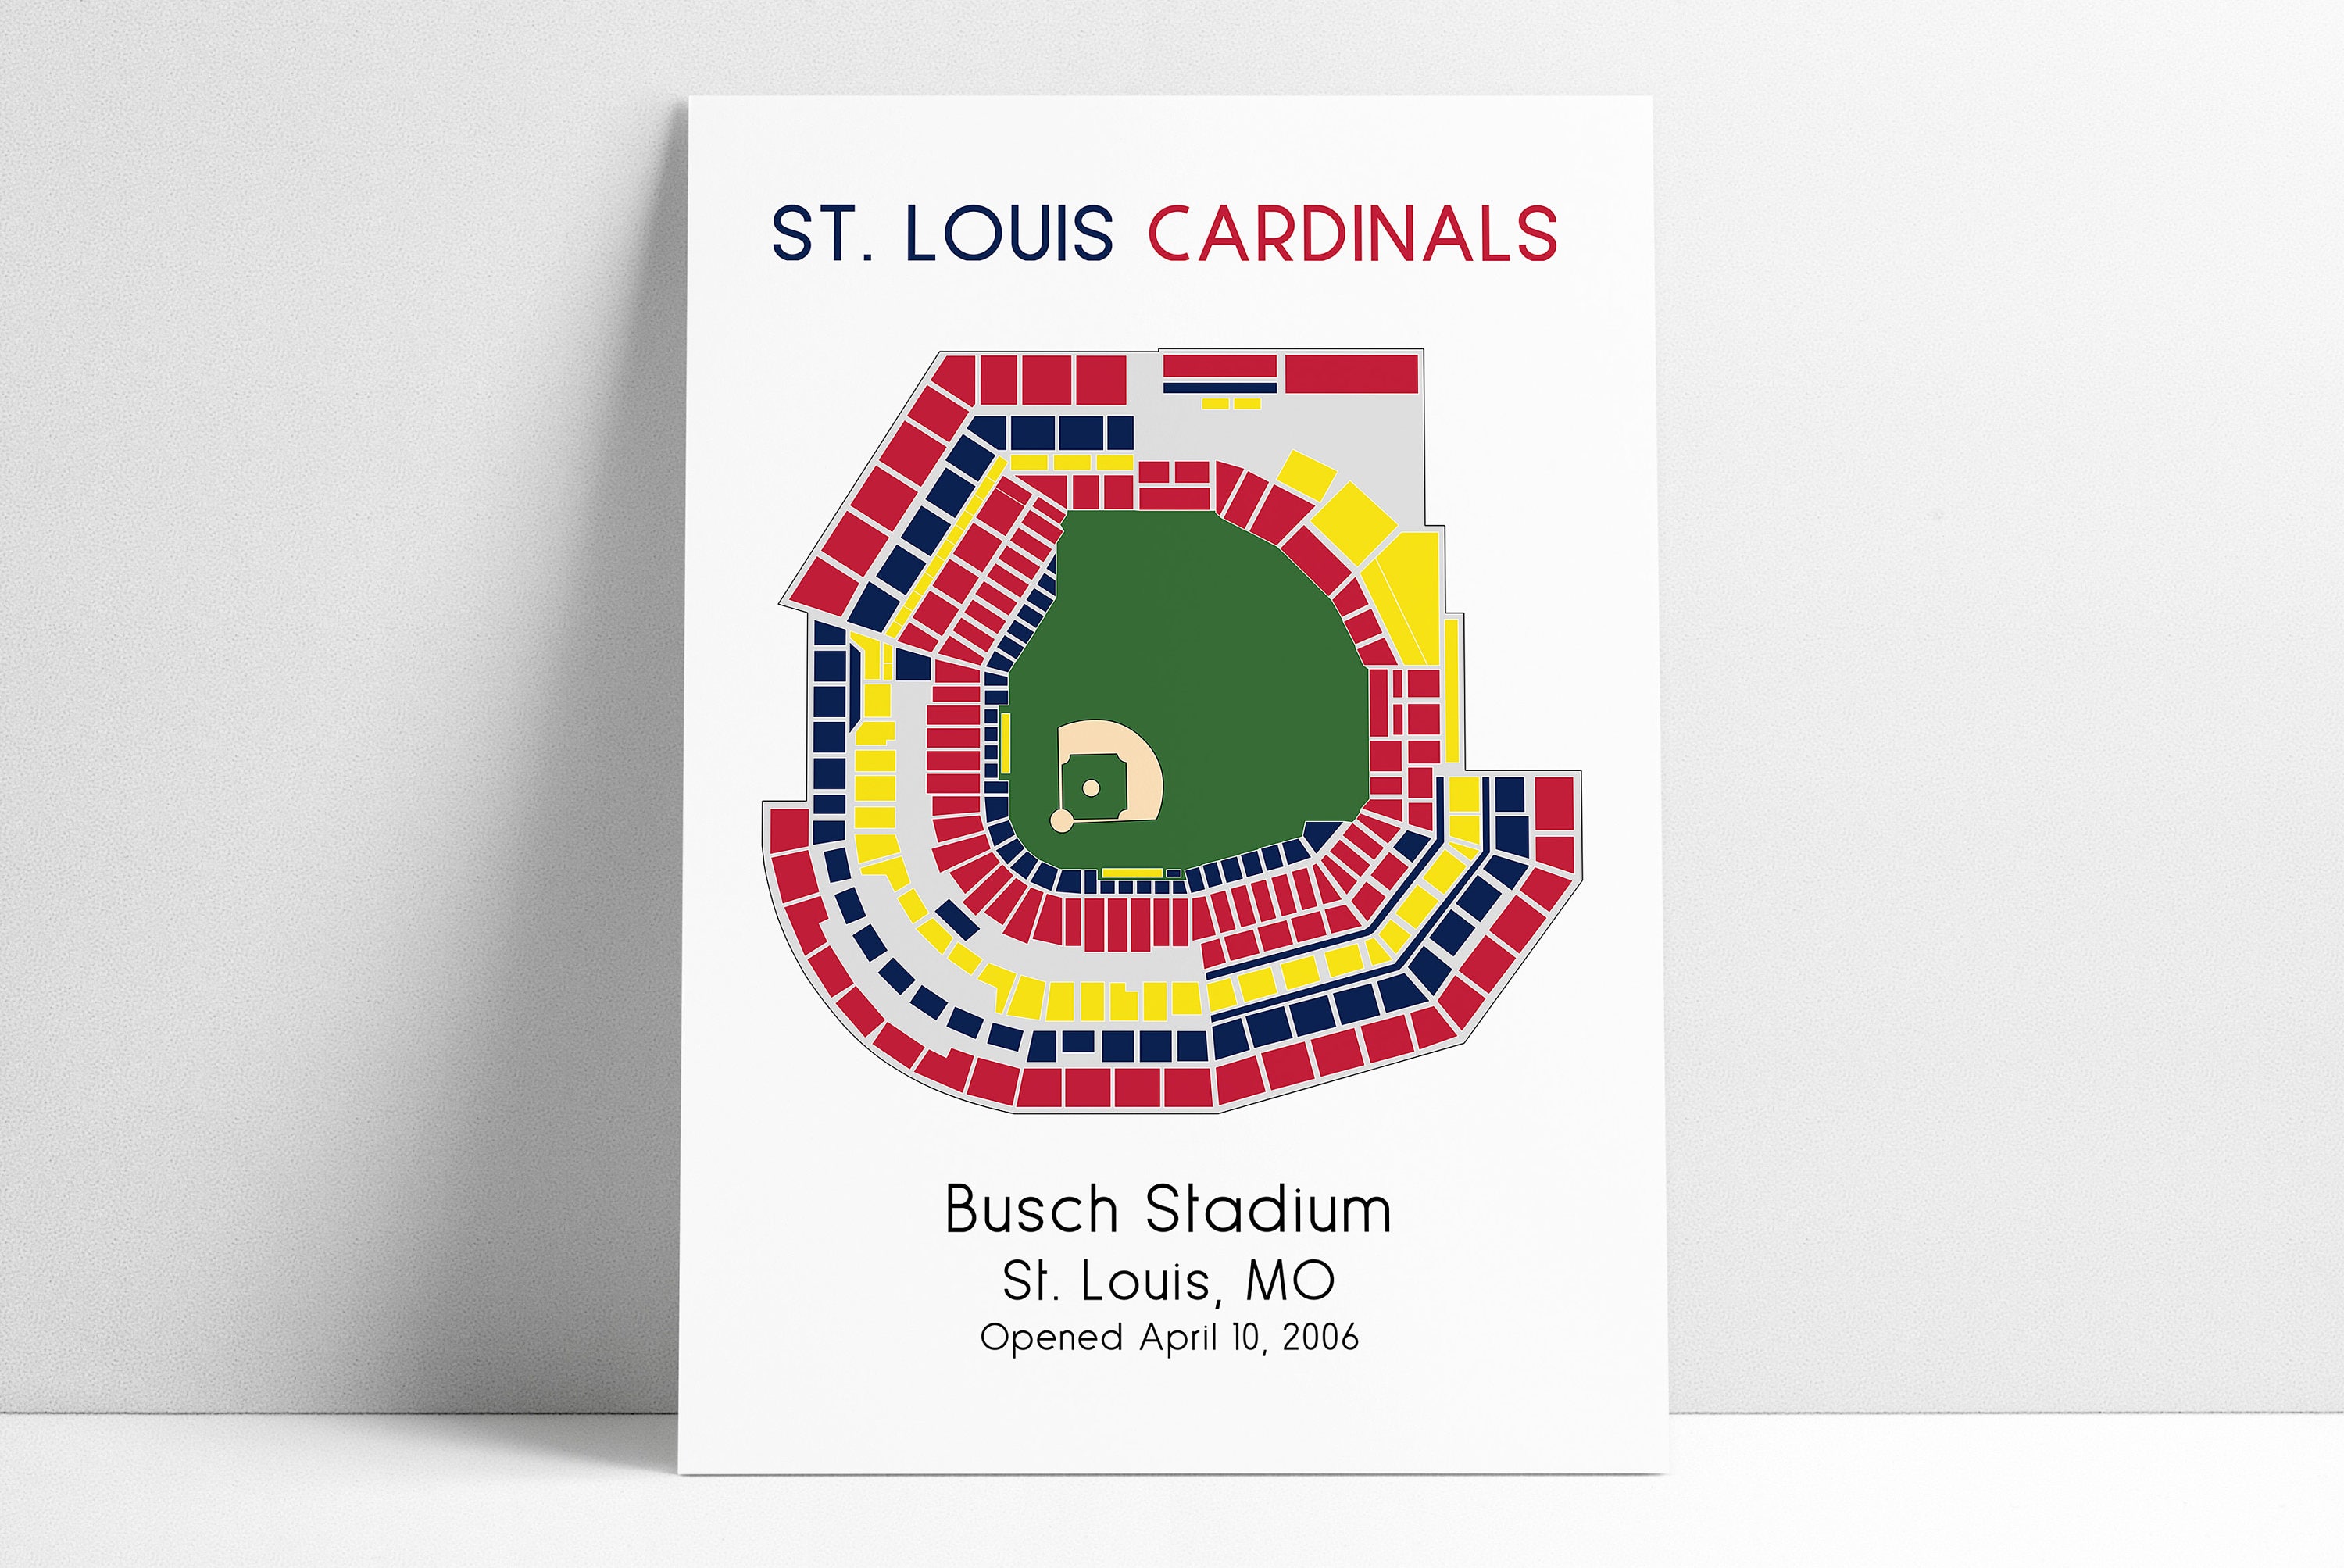 Busch Stadium, St. Louis Cardinals